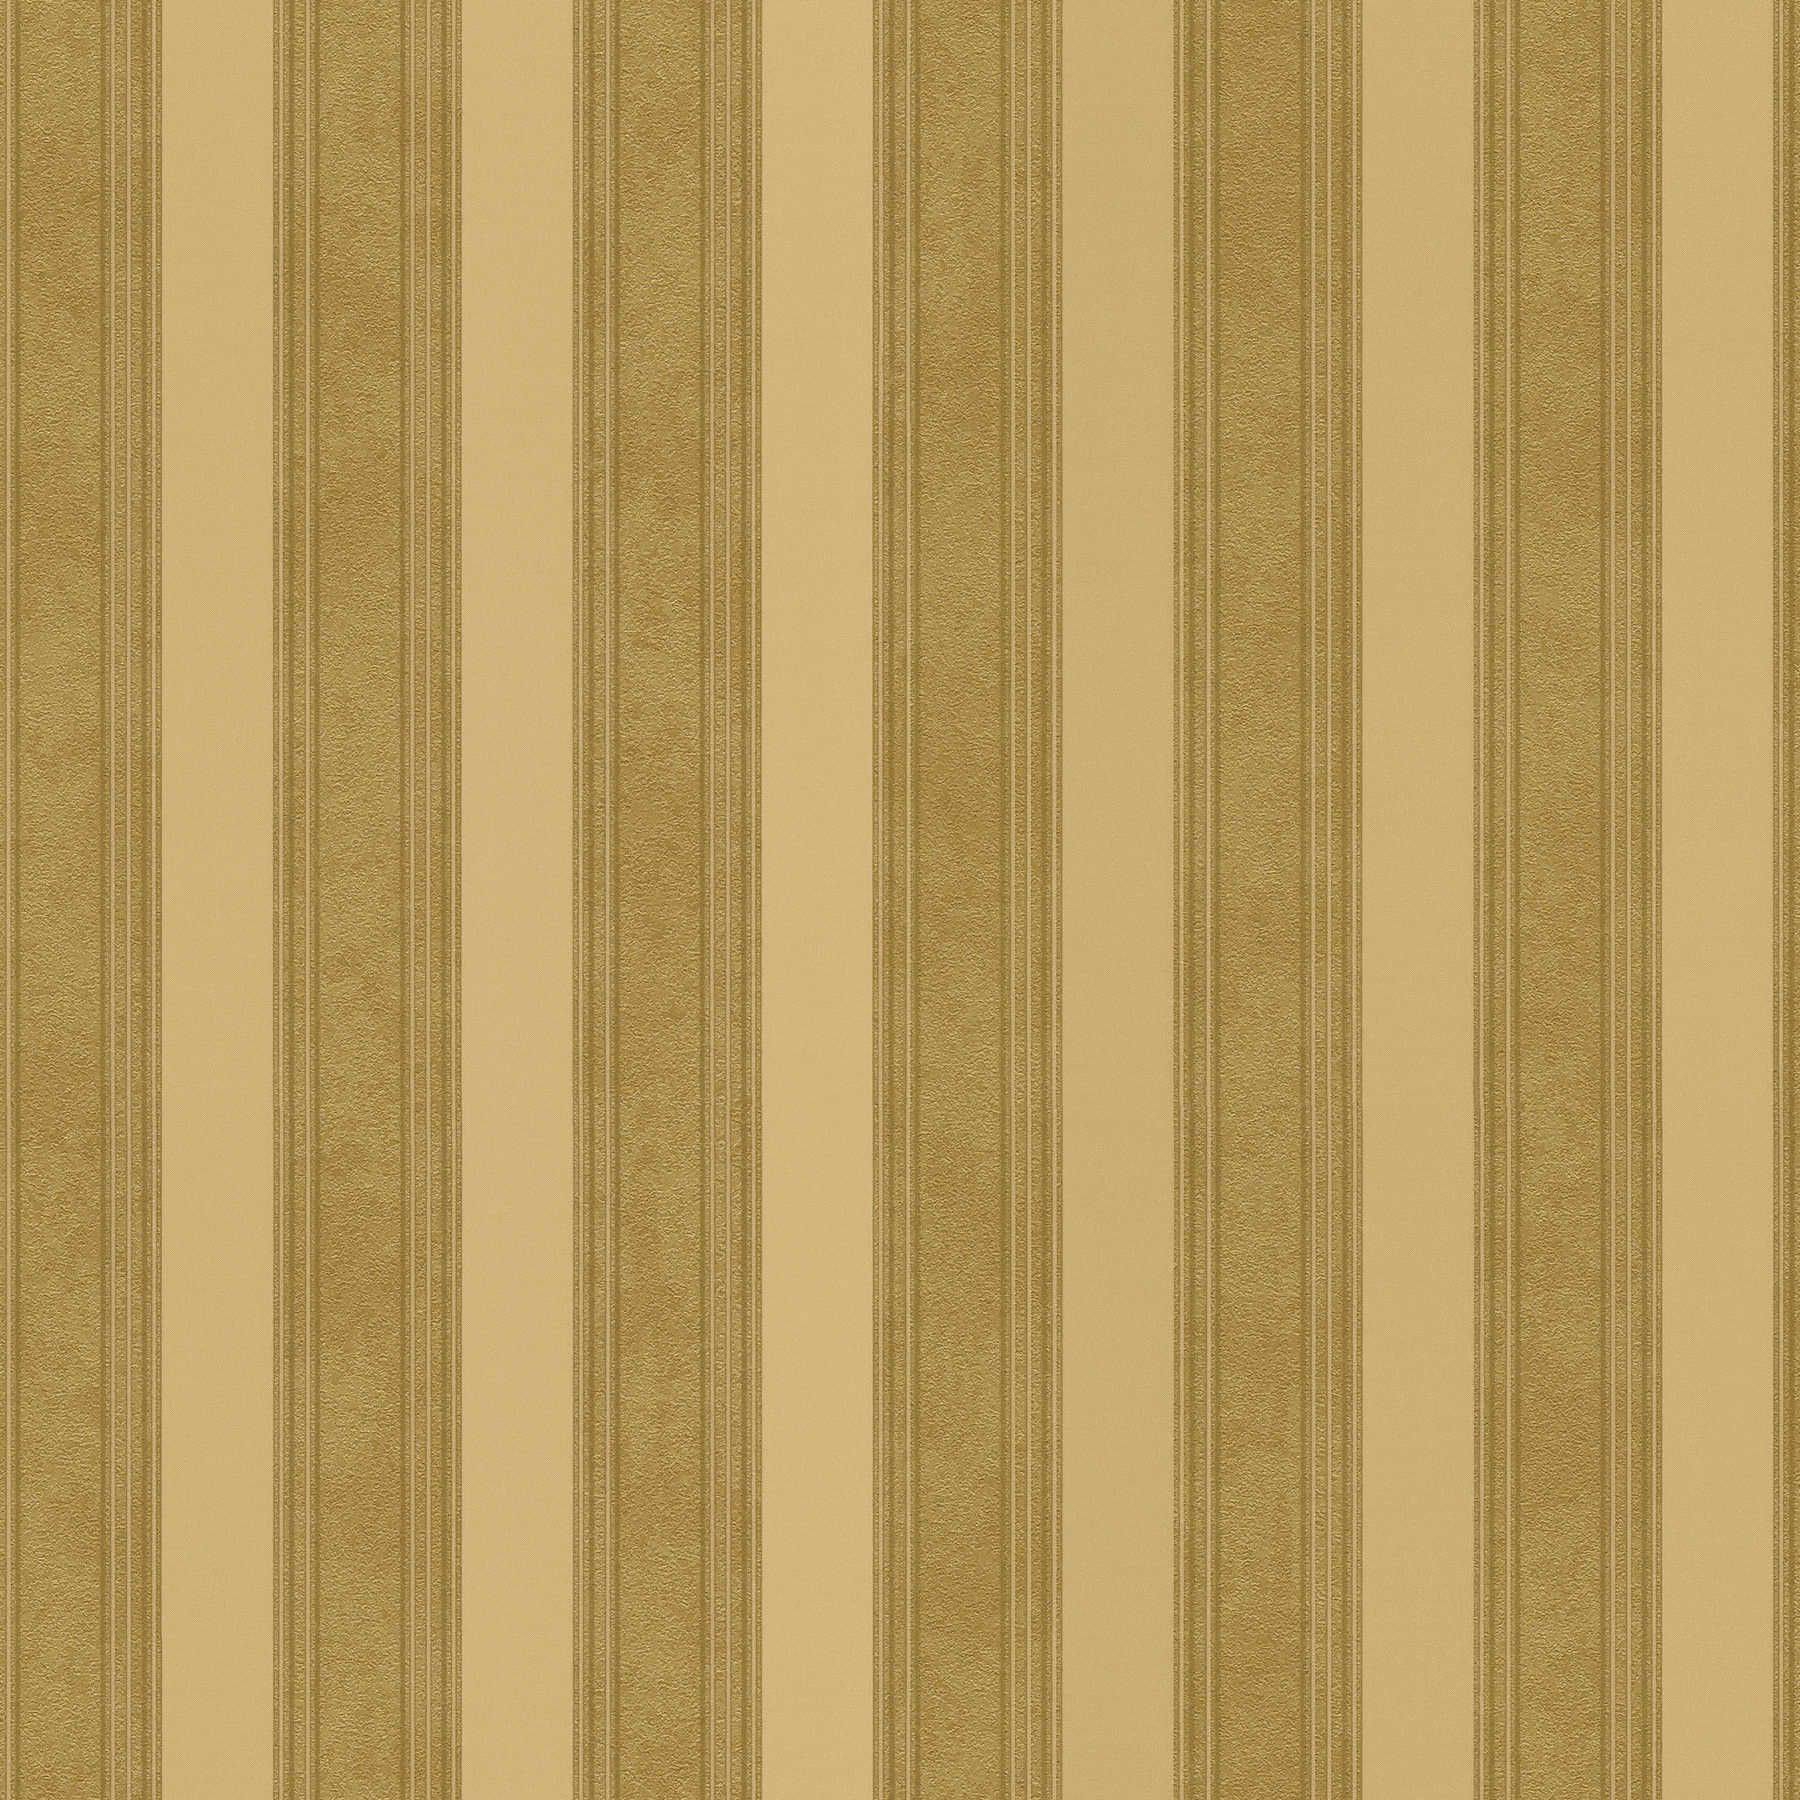         Golden stripe wallpaper with lines & texture effect - metallic
    